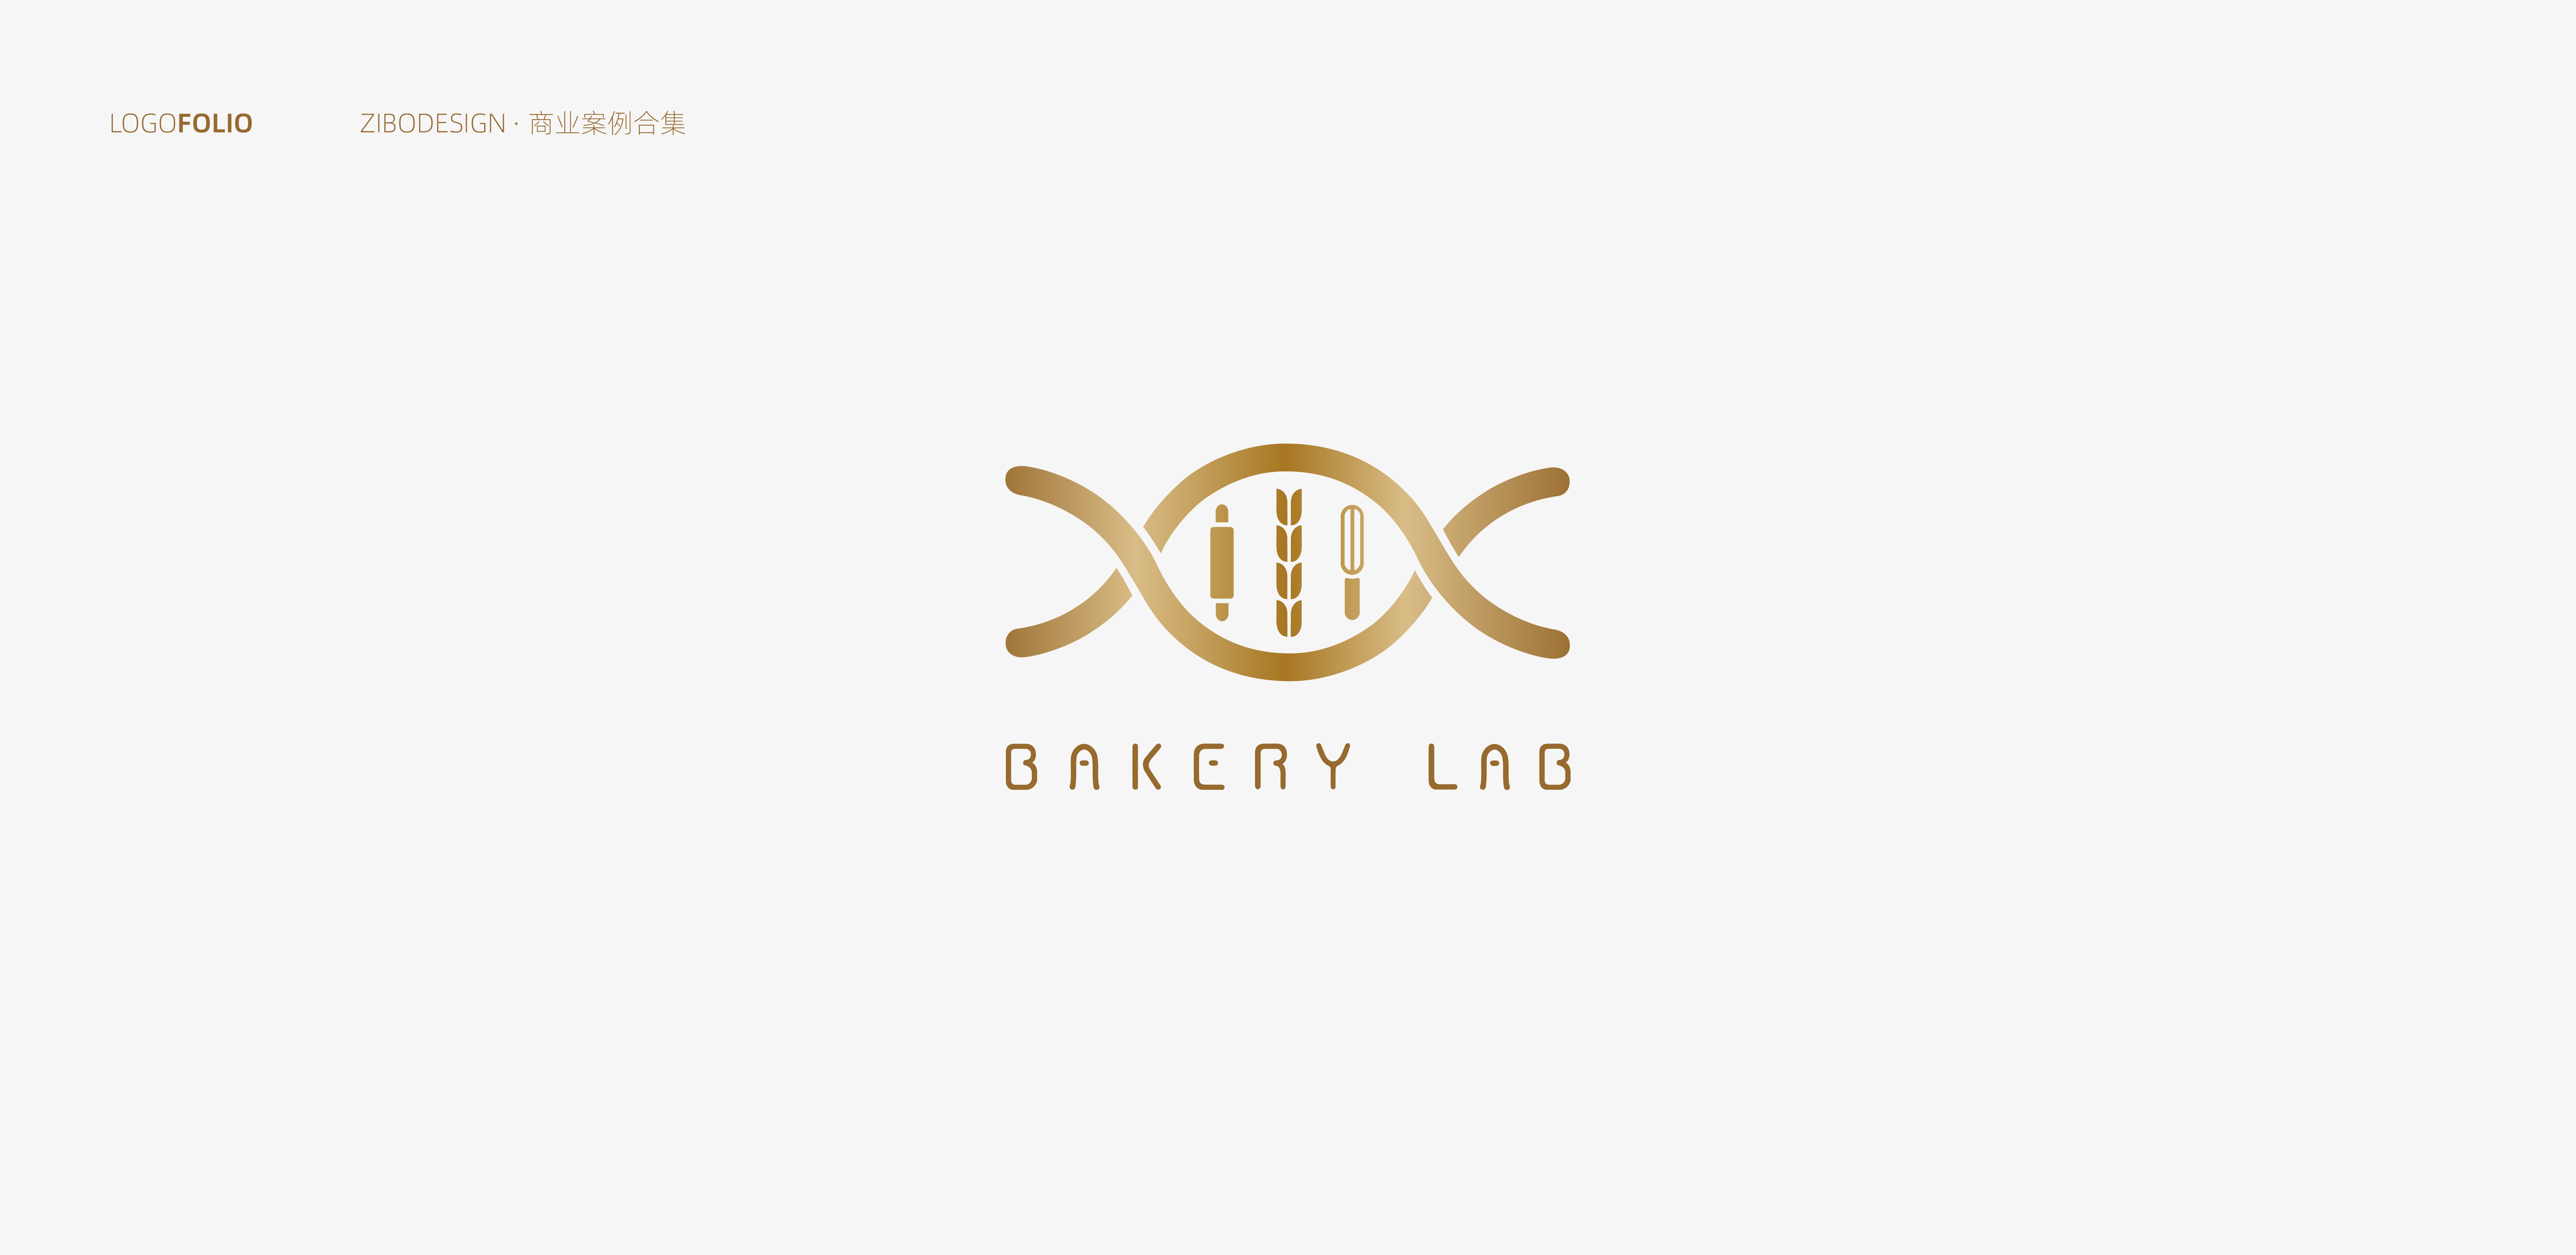 bakery lab logo设计